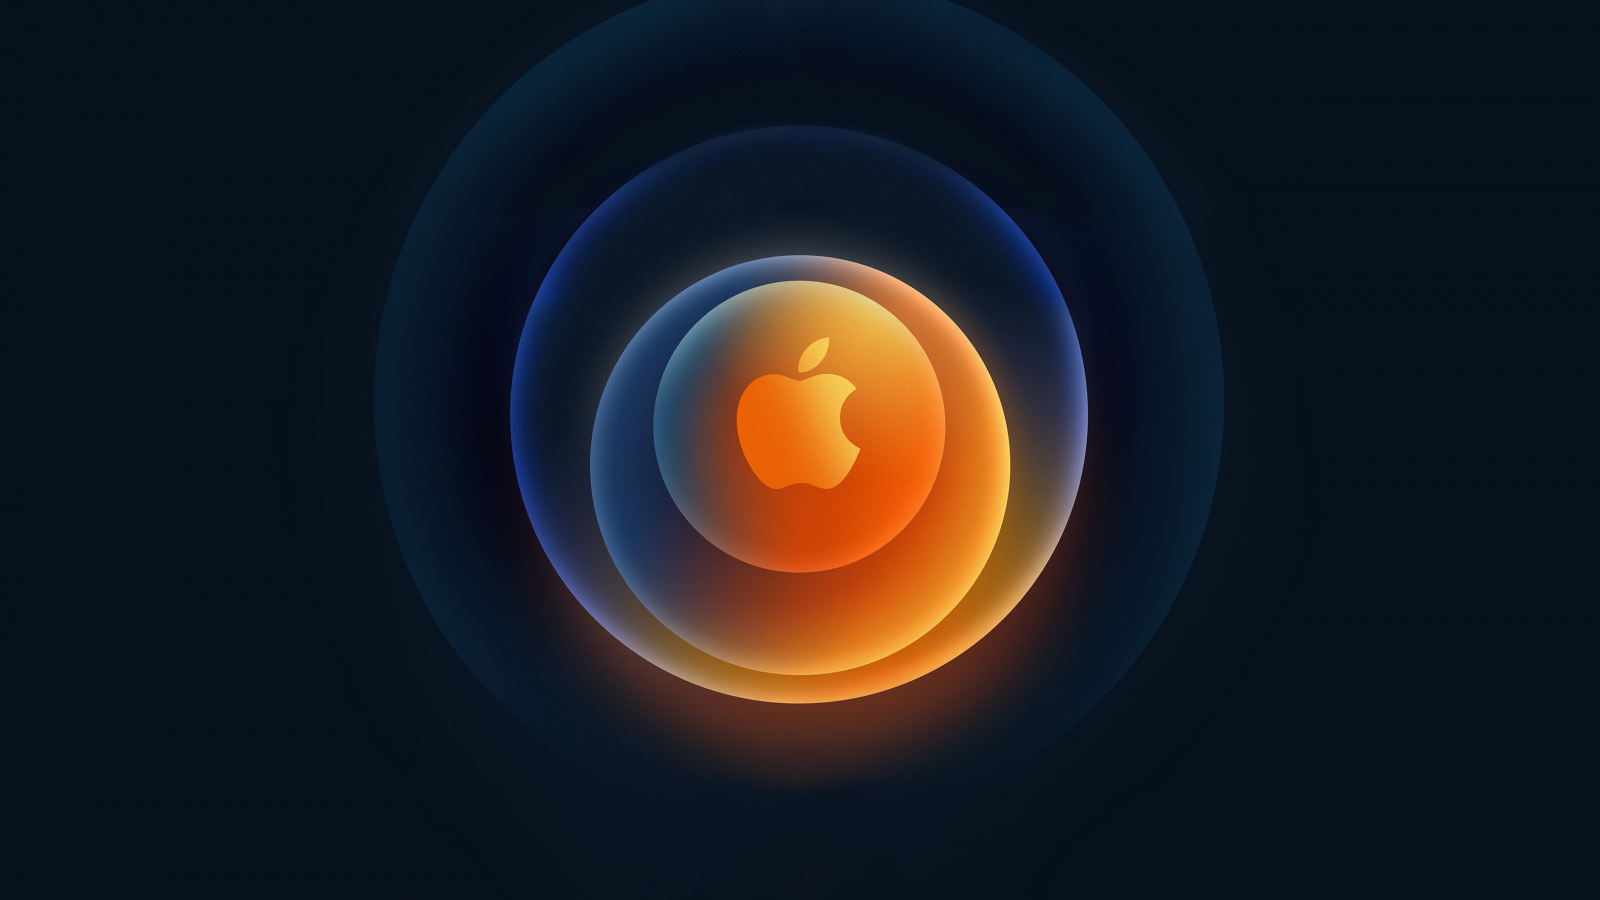 Download wallpaper 1600x900 apple, iphone 12, 2020, 16:9 widescreen ...